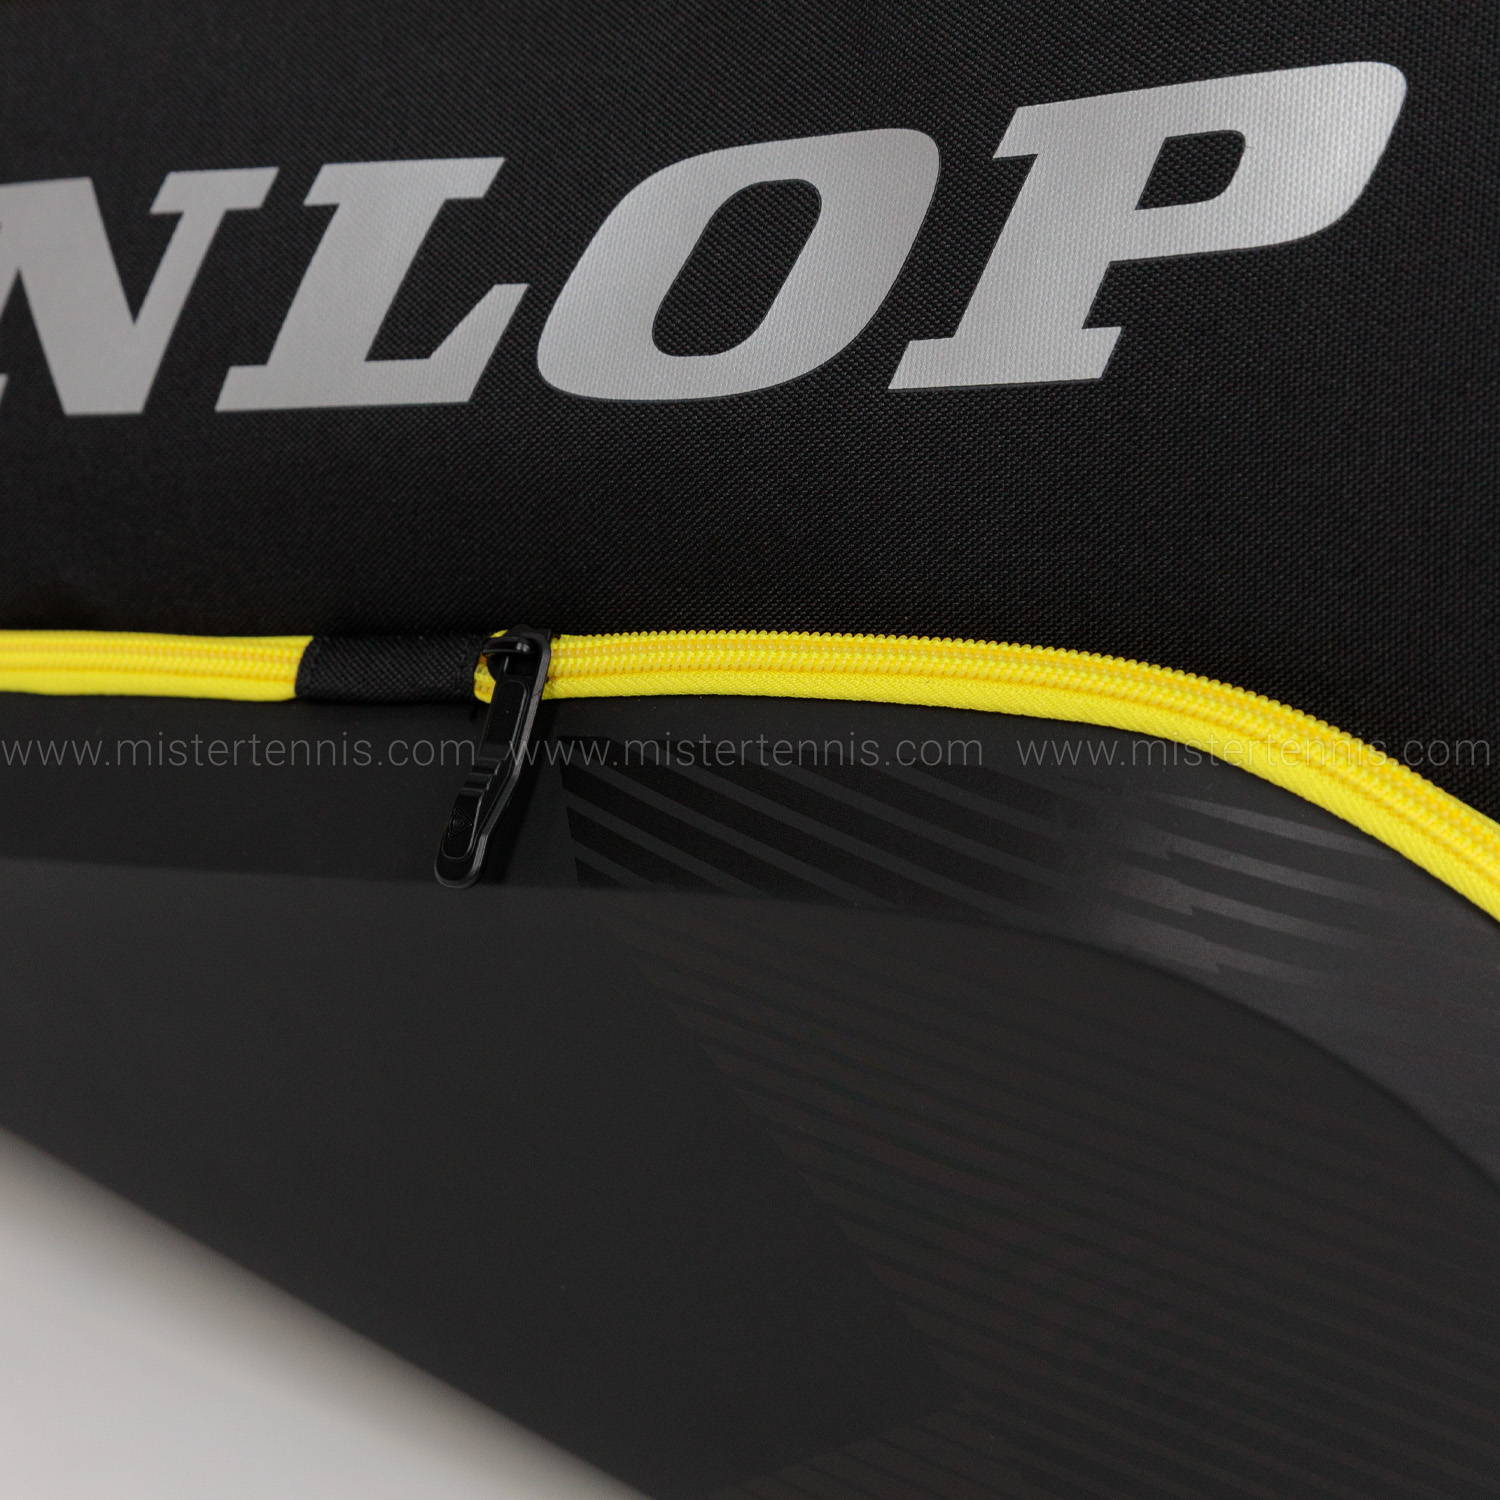 Dunlop Elite Thermo Borsa - Black/Yellow